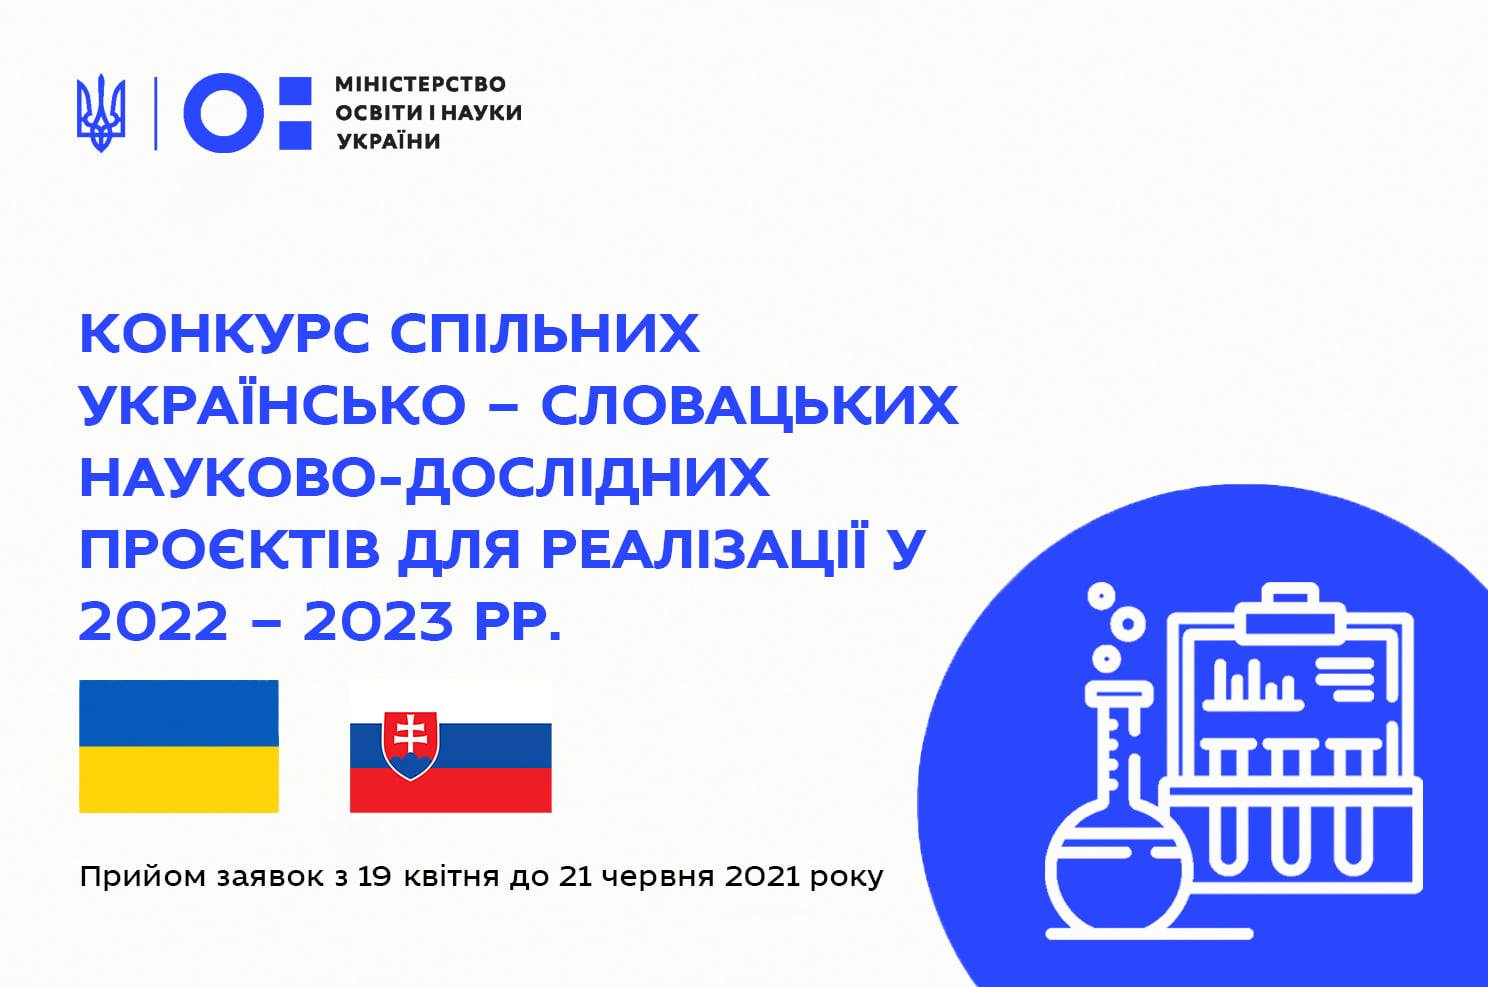 Конкурс спільних українсько-словацьких науково-дослідних проєктів, які будуть реалізовані у 2022-2023 роках